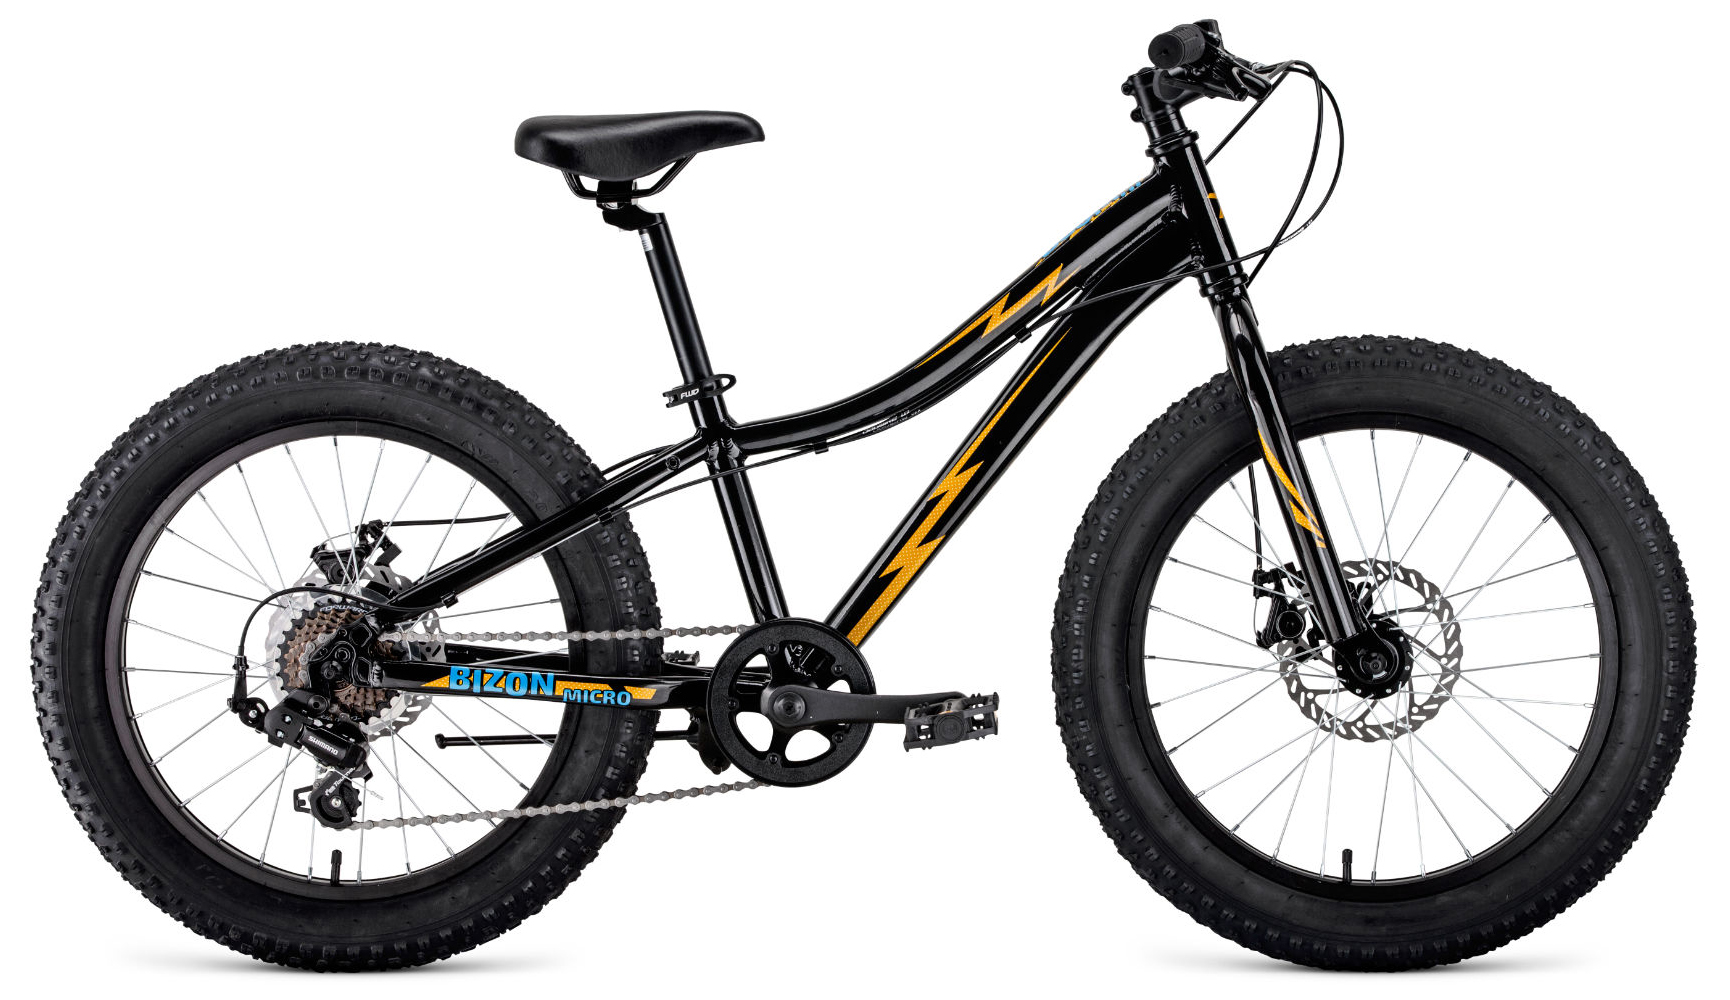  Отзывы о Детском велосипеде Forward Bizon Micro 20 2020